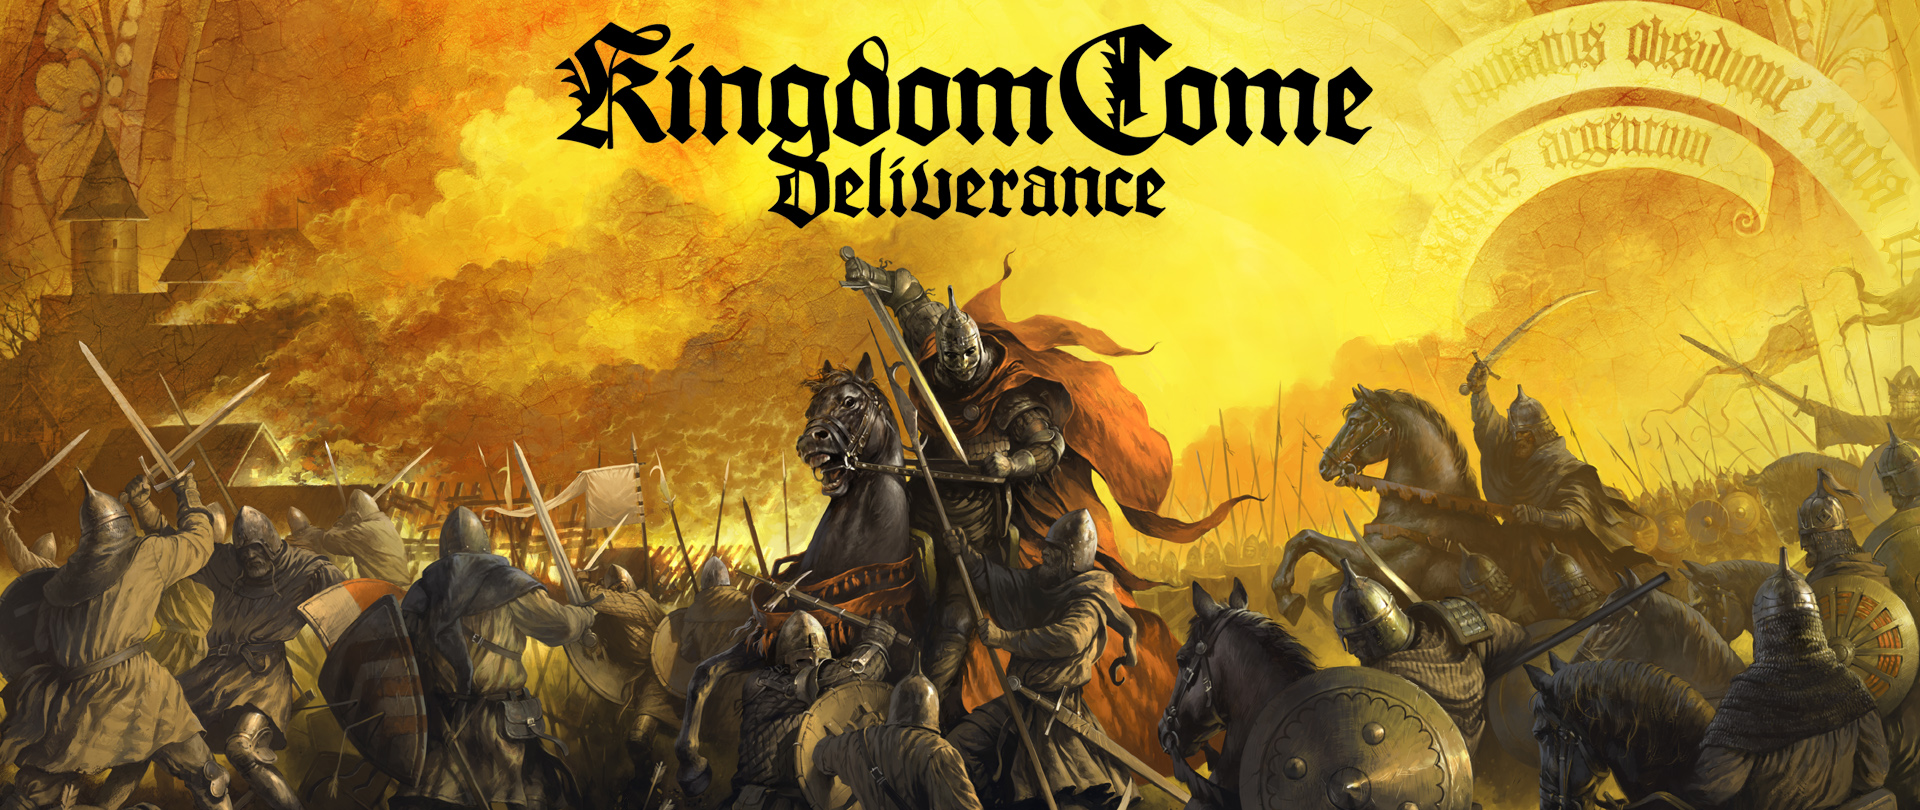 Kingdom Come: Deliverance se prepara para San Valentín